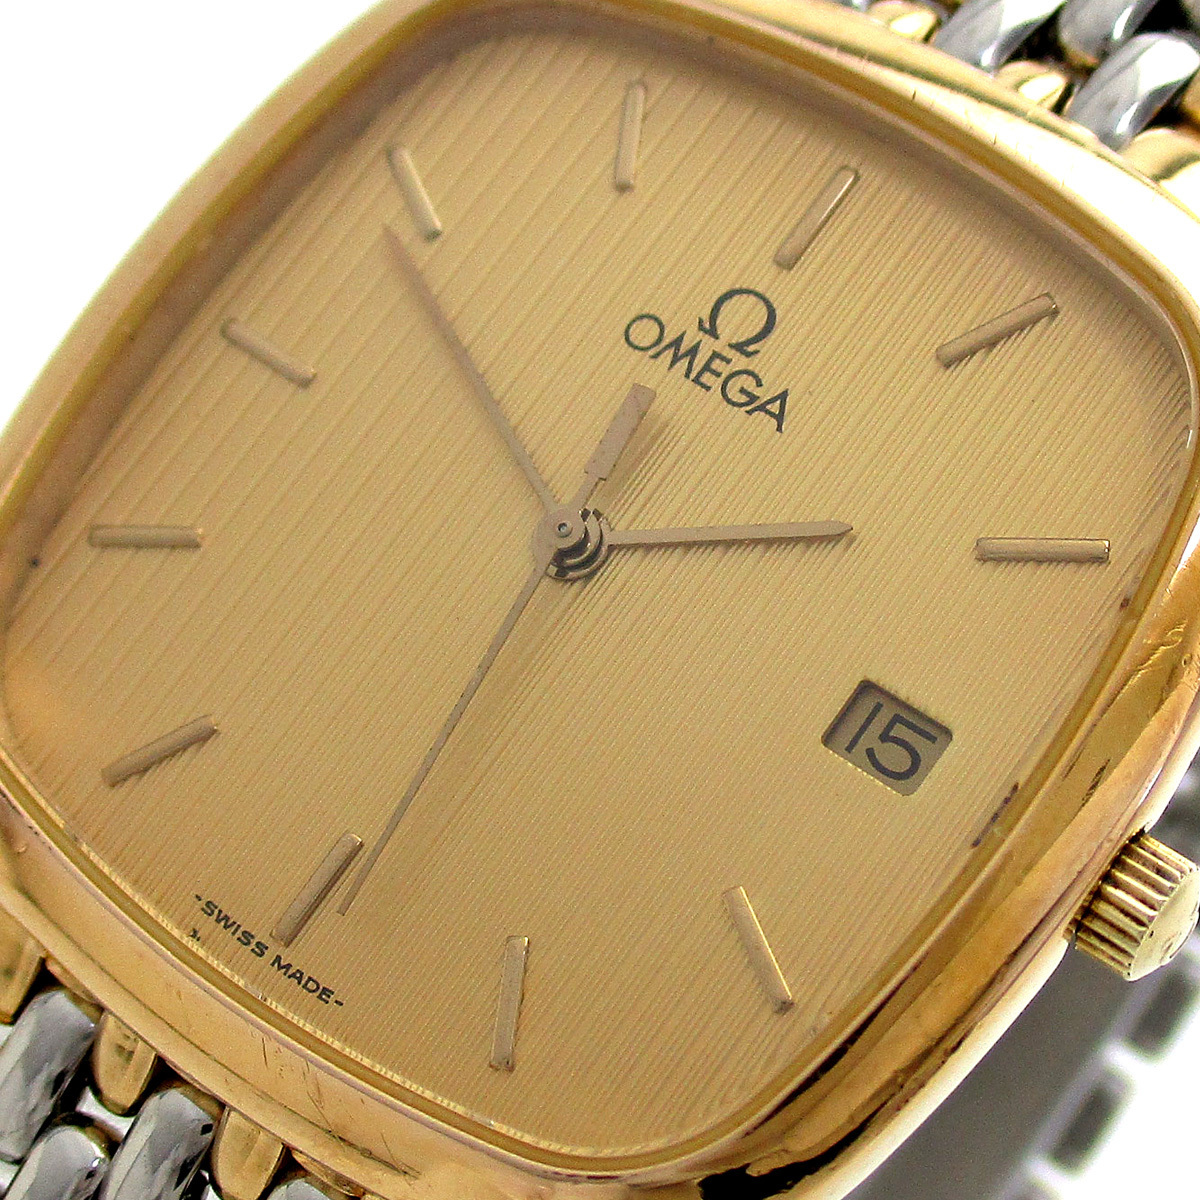 驚きの値段 メンズ コンビ ゴールド クッションスクエア デビル 時計 オメガ ゴールド文字盤 腕時計 デ・ヴィル デヴィル デ・ビル deville OMEGA デビル